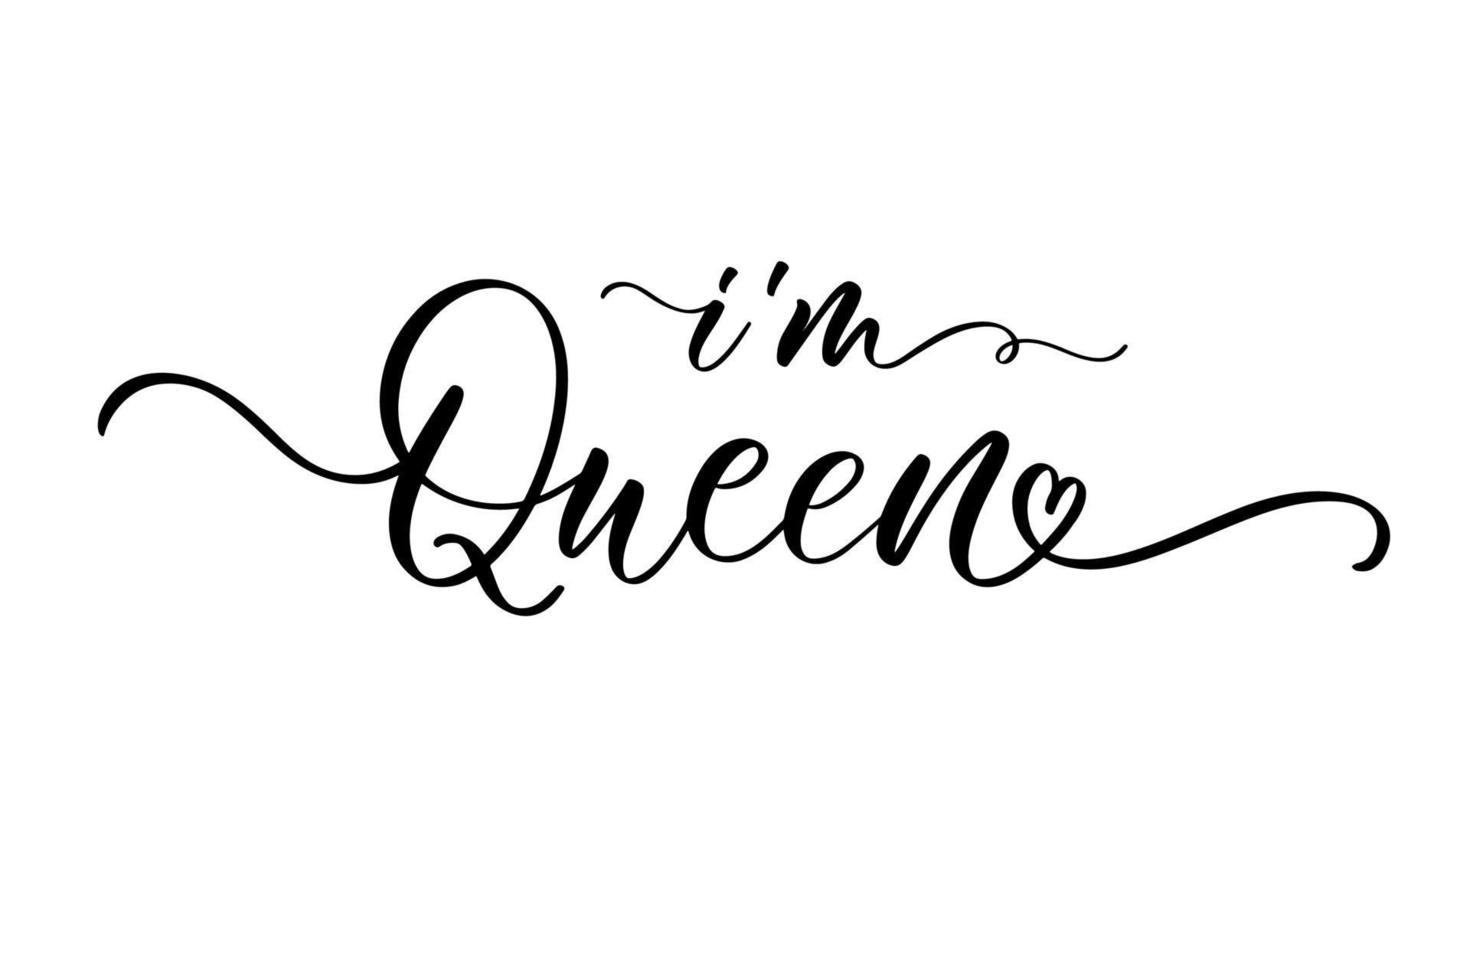 jag är drottning. kalligrafi drottning design att skriva ut på t-shirt, skjorta, hoody, affisch banner klistermärke, kort. hand bokstäver drottning text vektorillustration. vektor